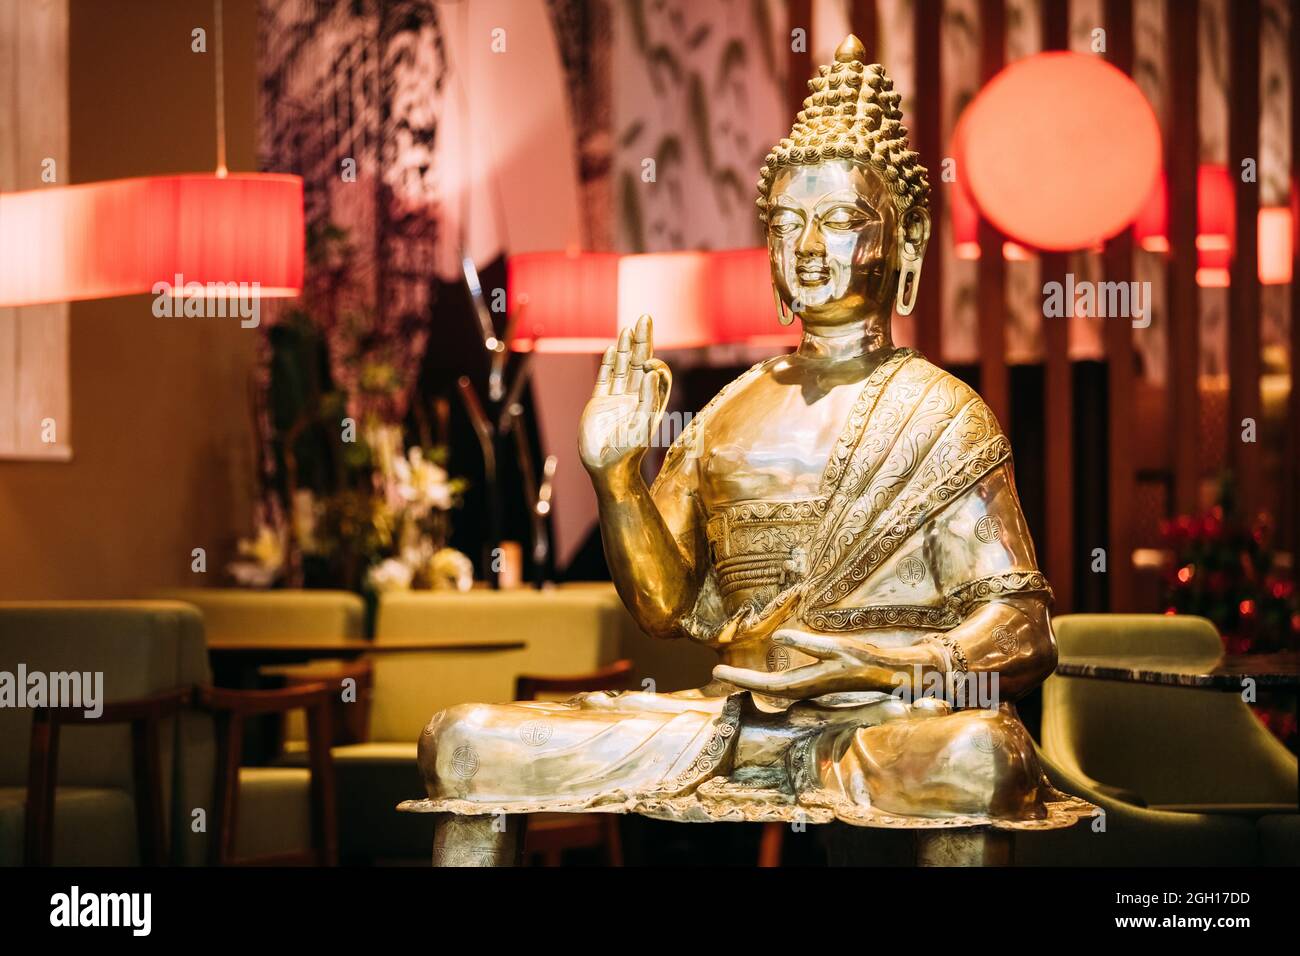 Goldene Statue des Buddha sitzt im Lotussitz mit rechten Arm Geste zeigen, Streit, erklären, Lehren des Buddha Vitarka Mudra erhoben. Stockfoto